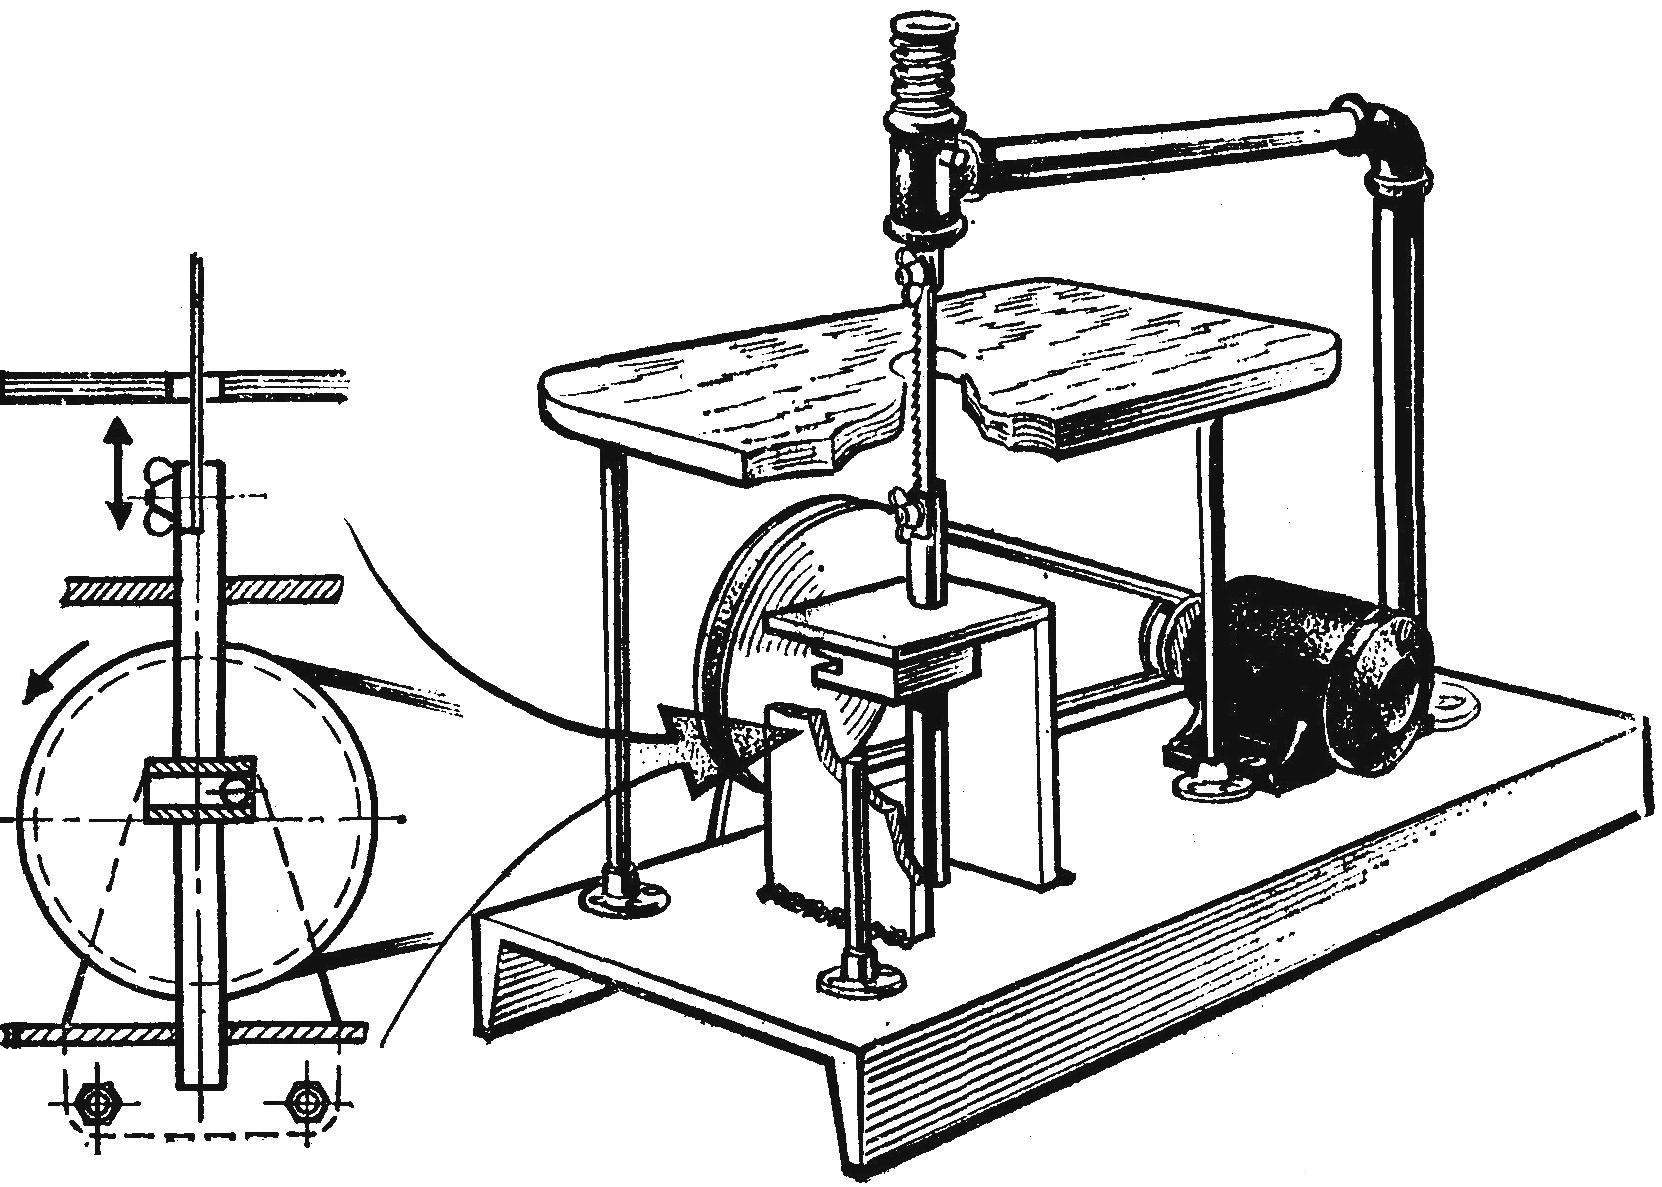 Fig. 5. Vypalovacky machine.